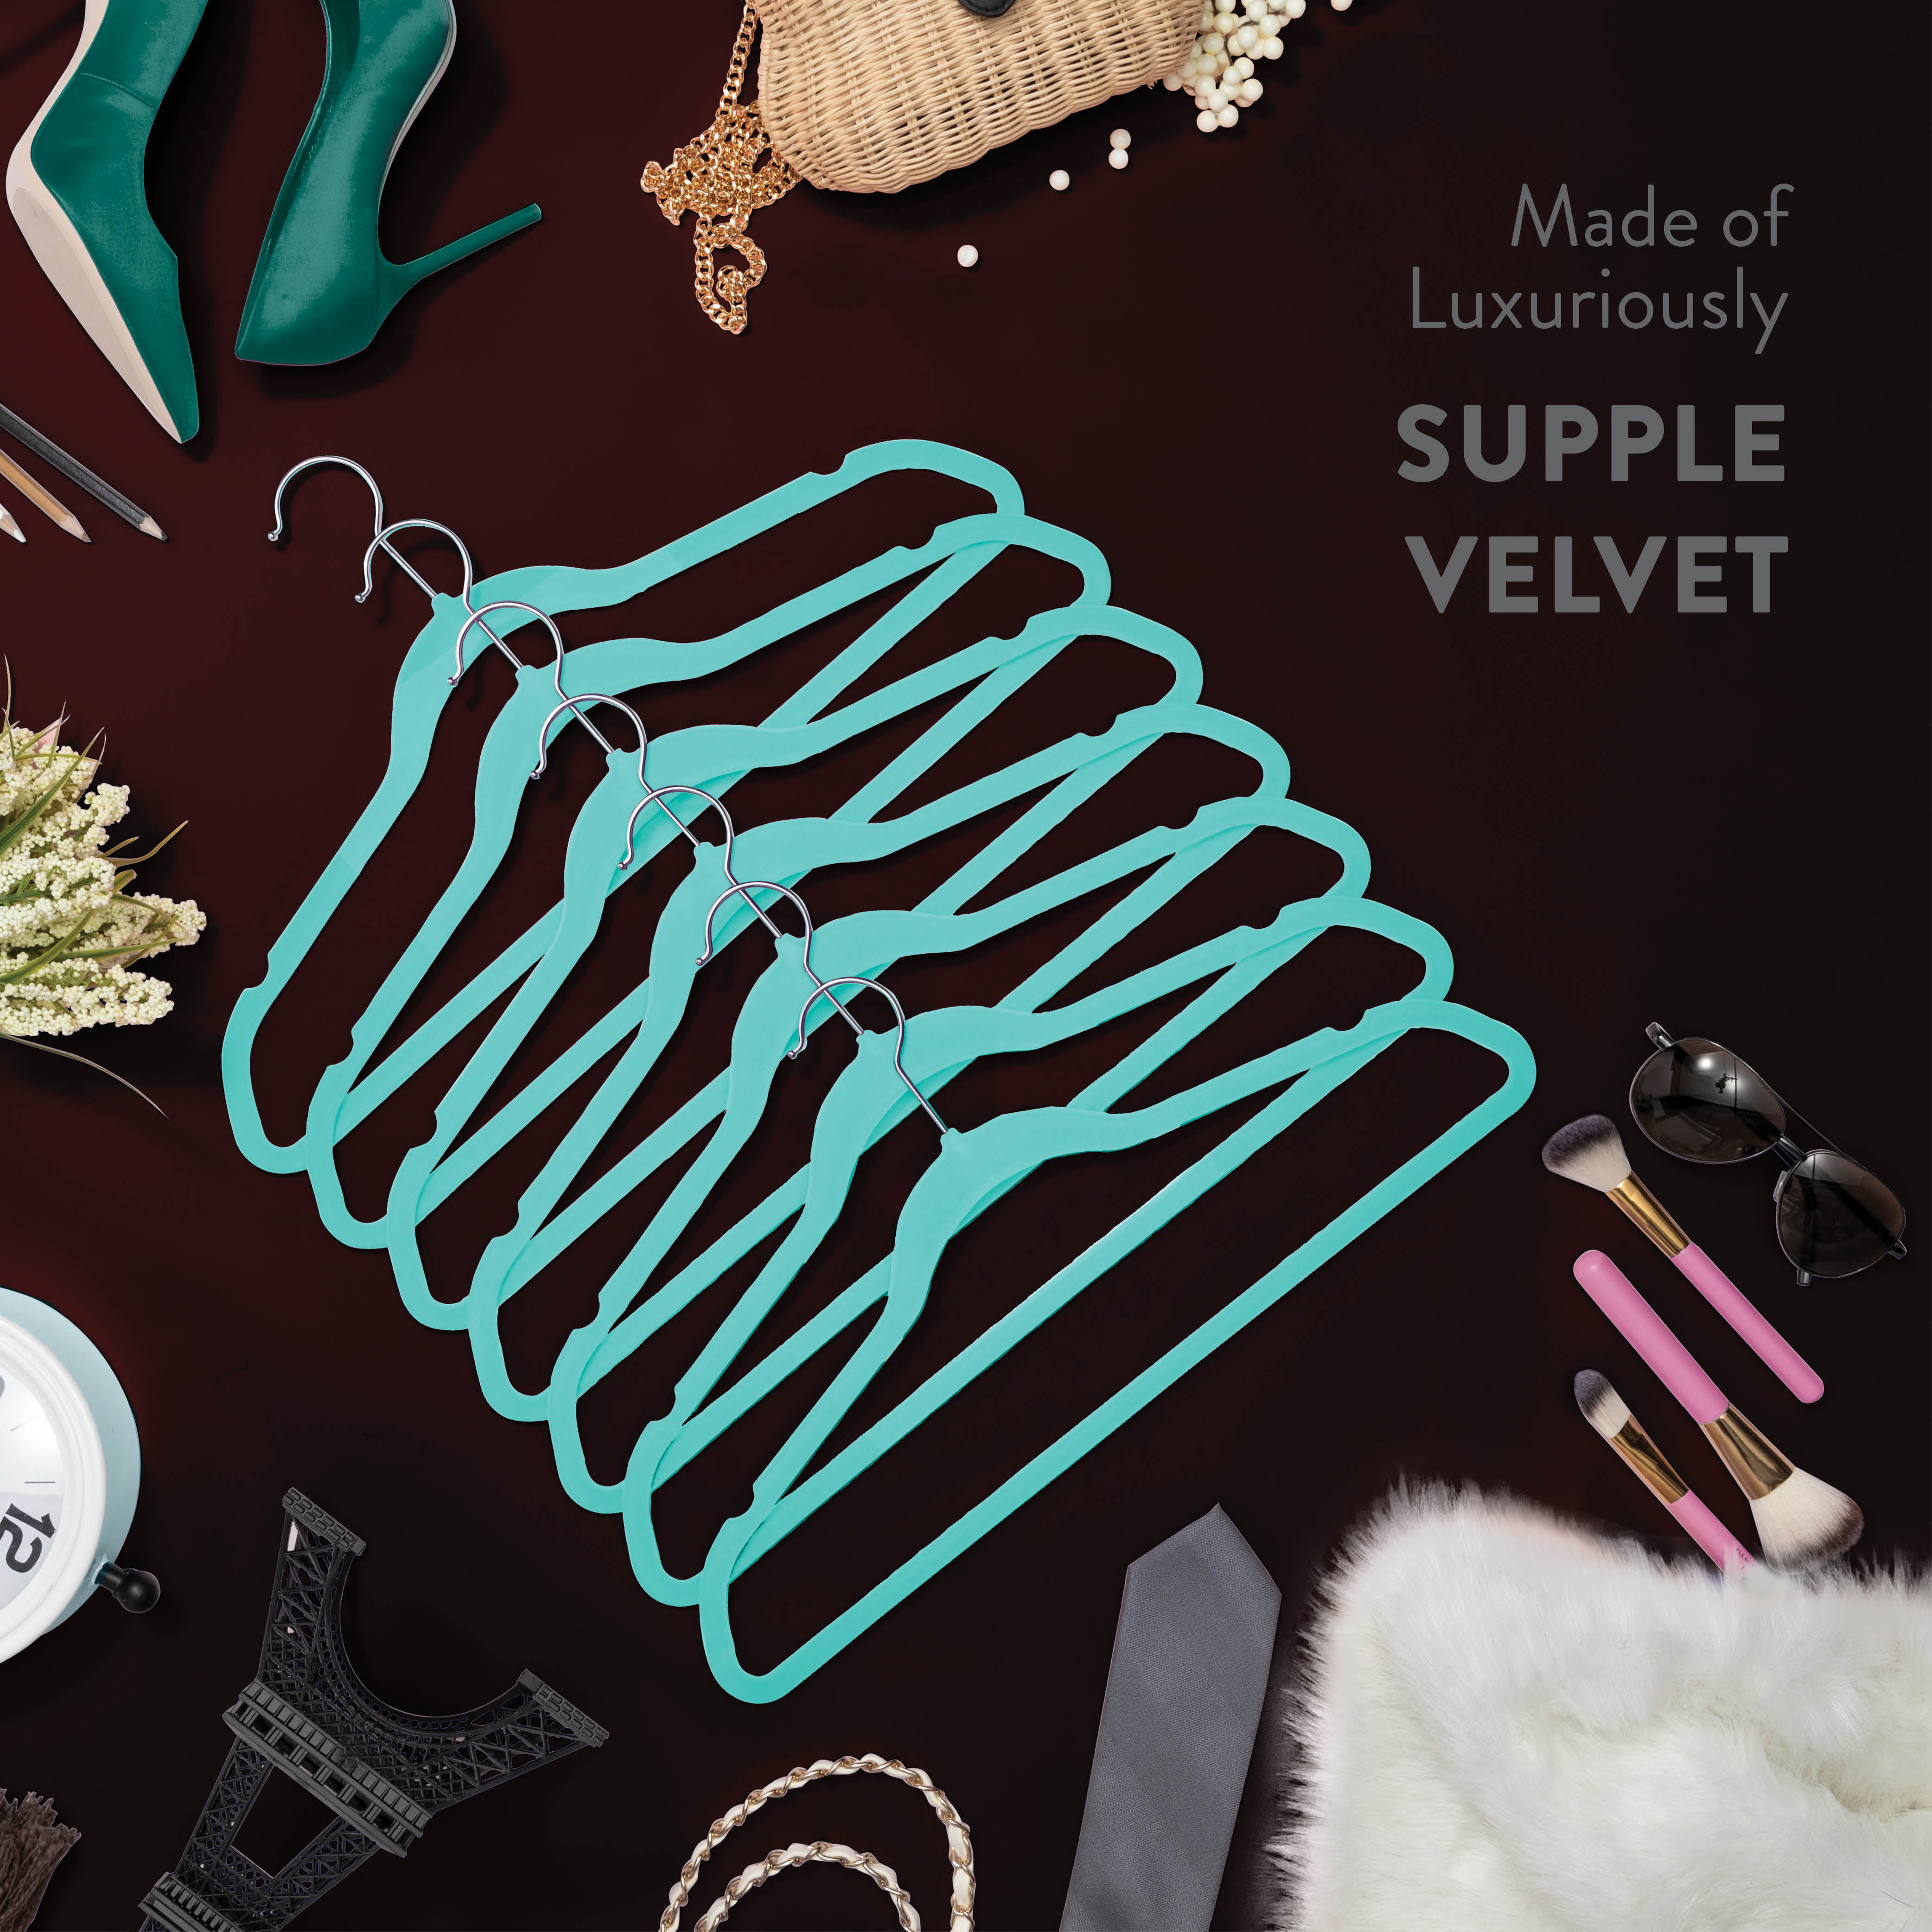 100 Velvet Suit Hangers - Non-Slip with Chrome Swivel Hook - Gray, 17.25 x  9.25 - Foods Co.